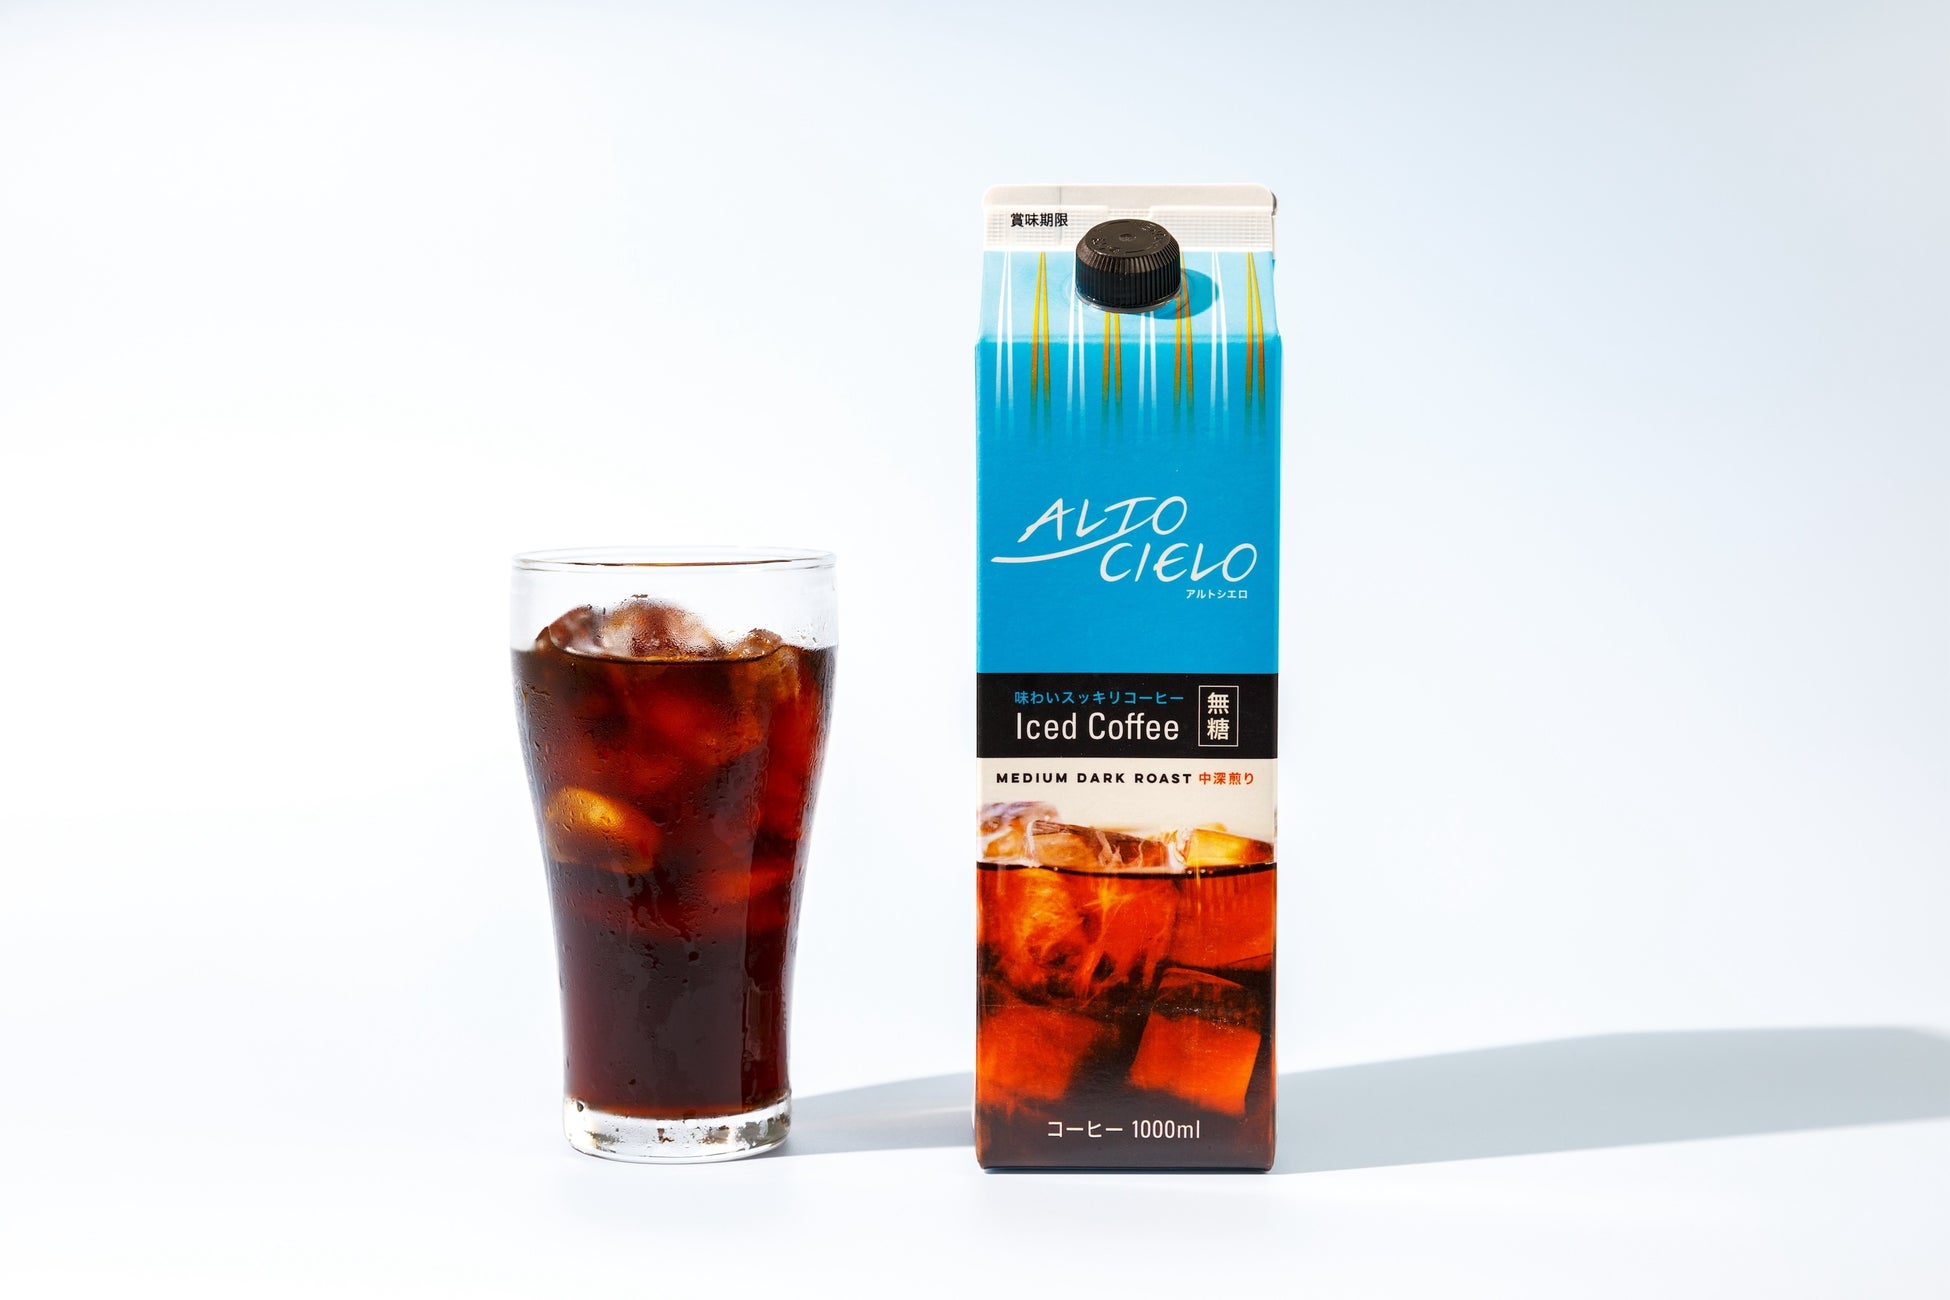 アルトシエロシリーズにリキッドアイスコーヒー新登場「ALTO CIELO Iced Coffee 無糖」 5月24日（金）より販売開始